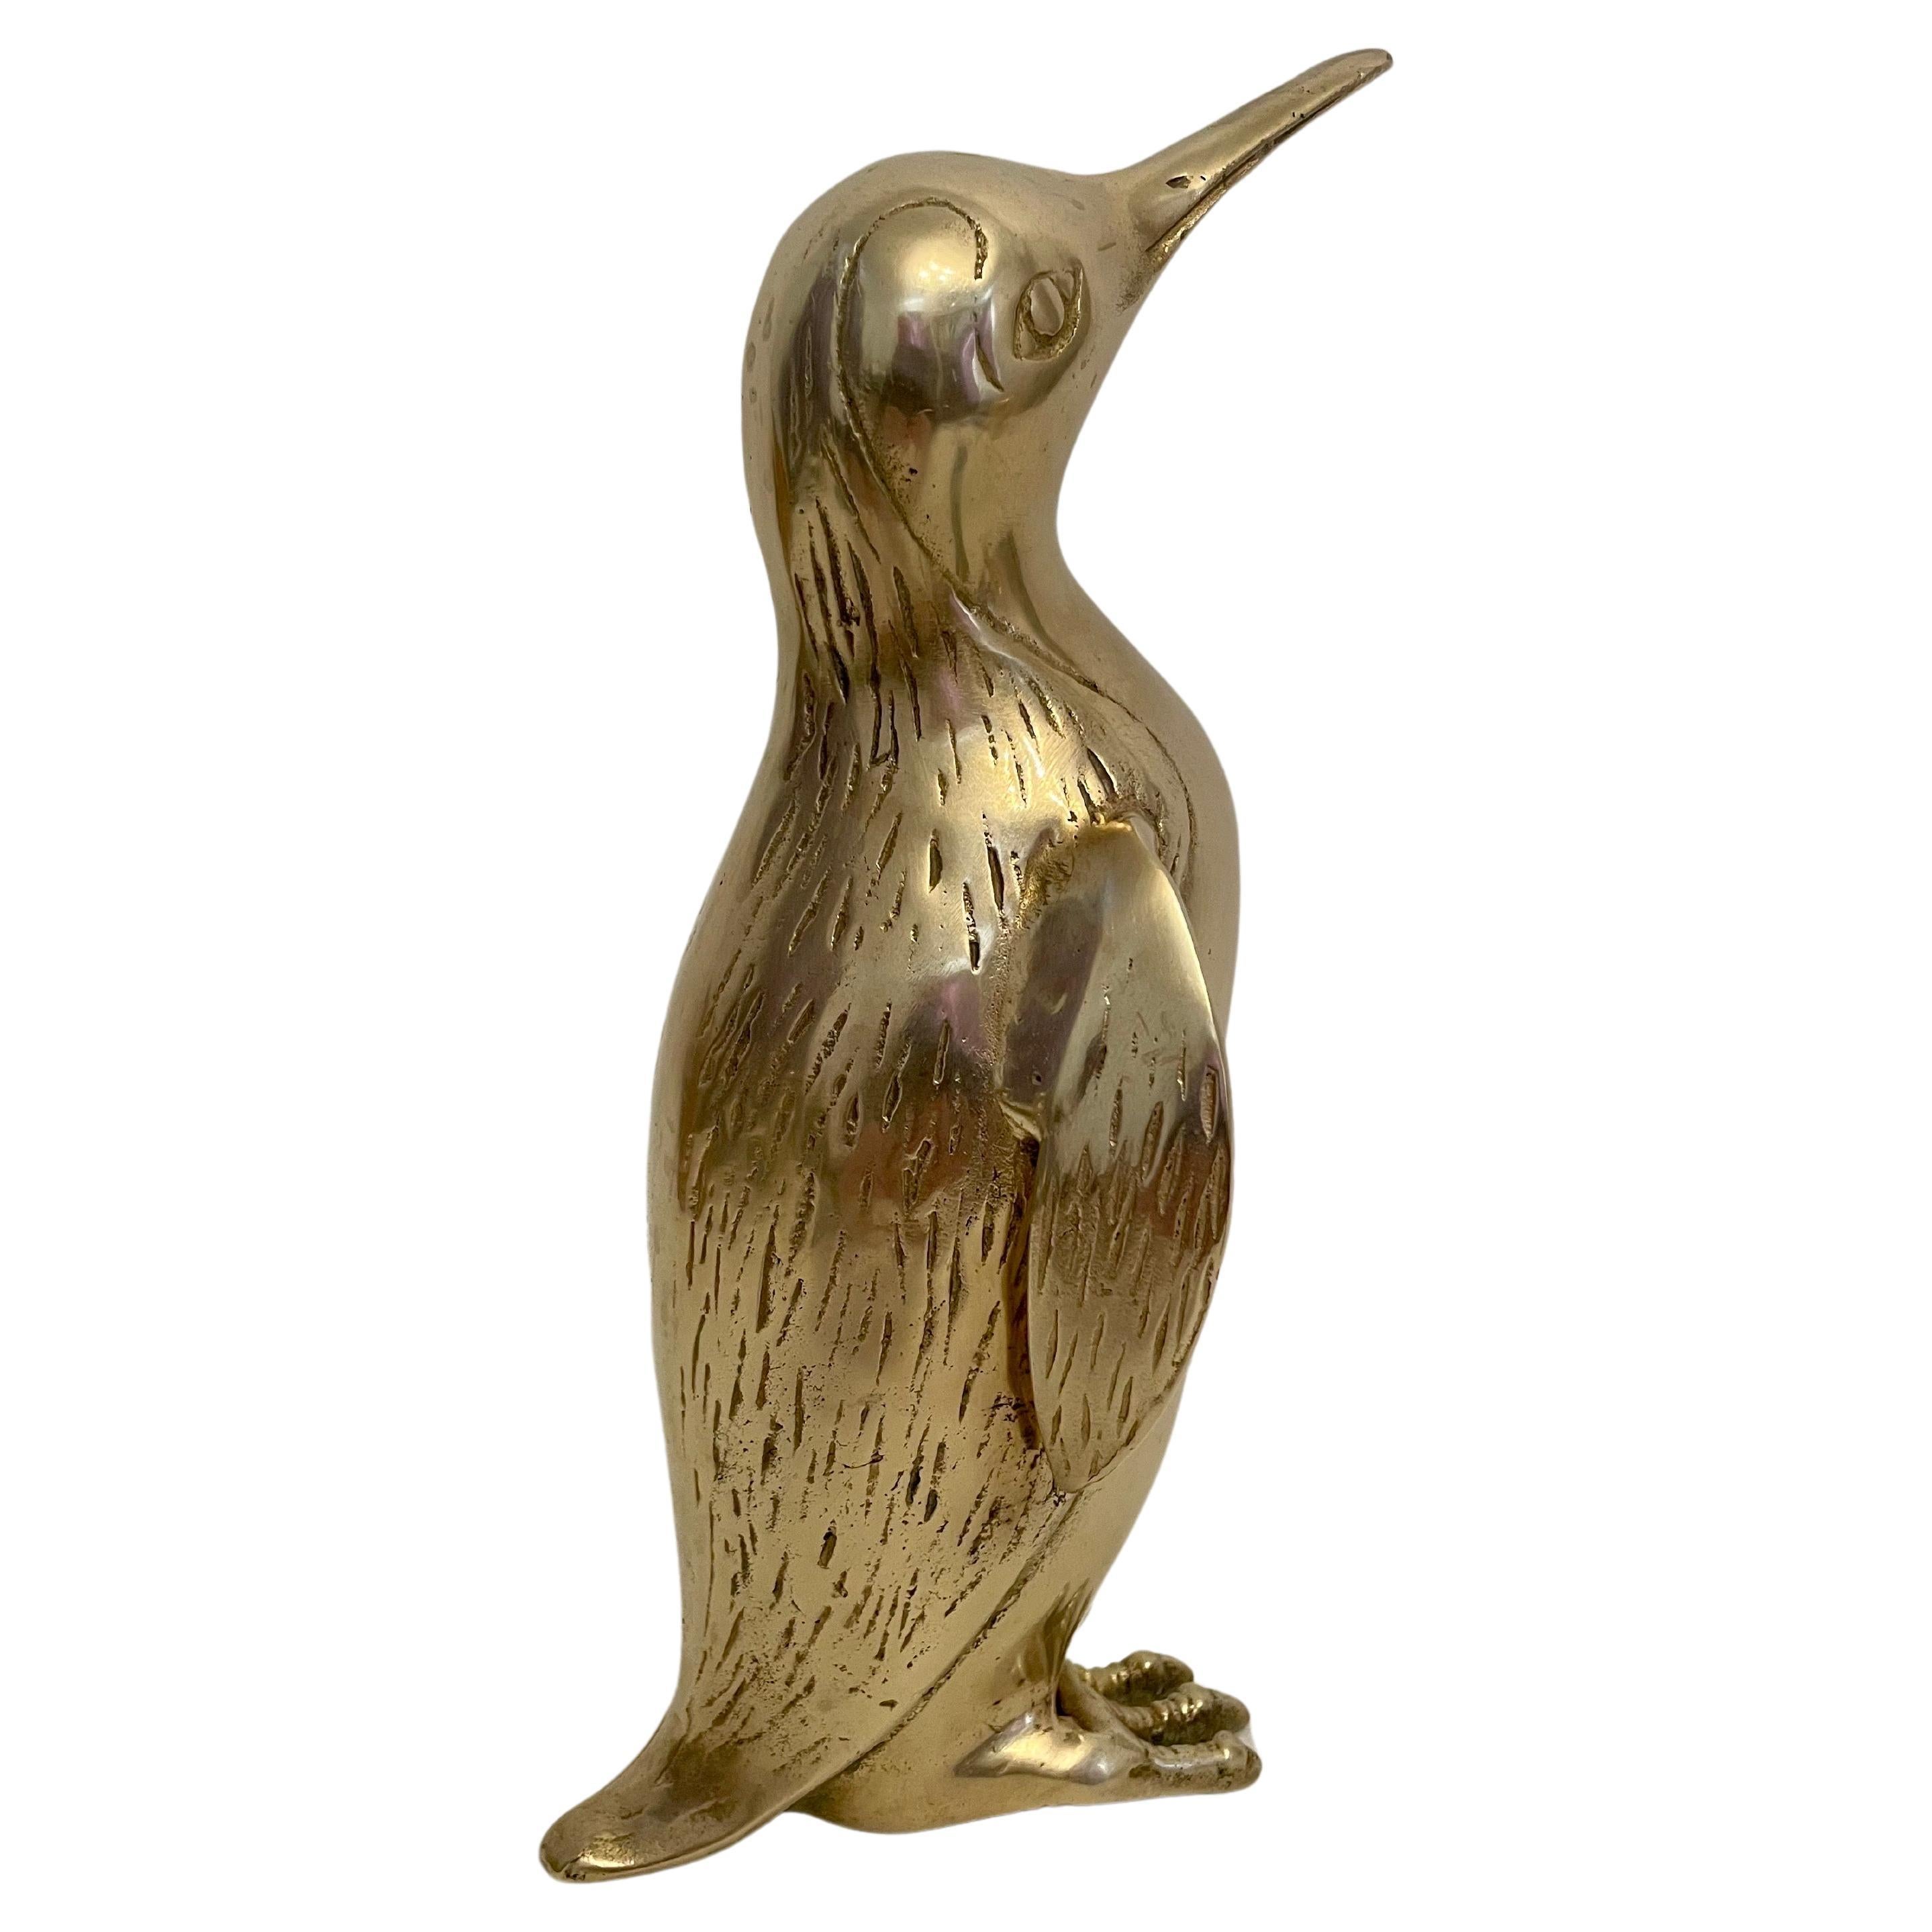  Large Vintage Hollywood Regency Brass Penguin Sculpture For Sale